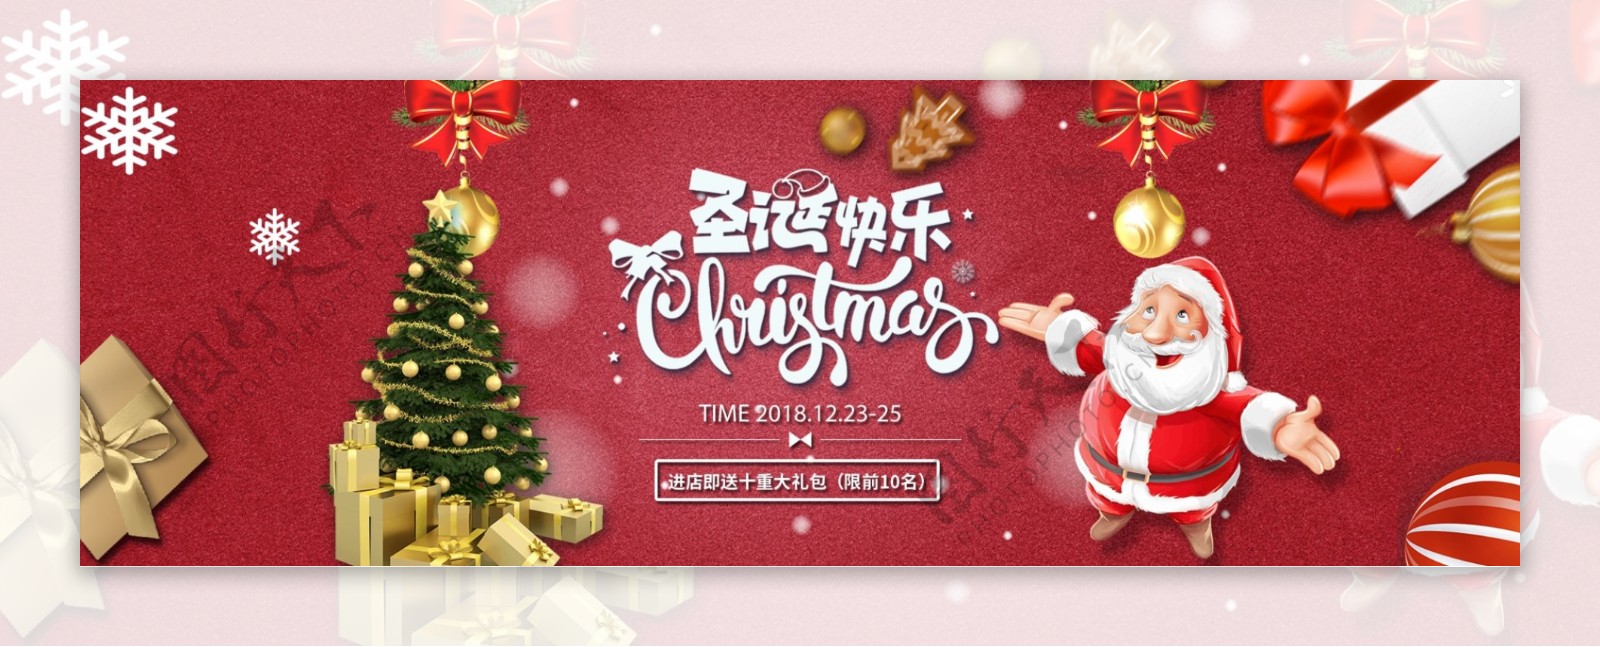 淘宝电商圣诞节促销节日海报banner